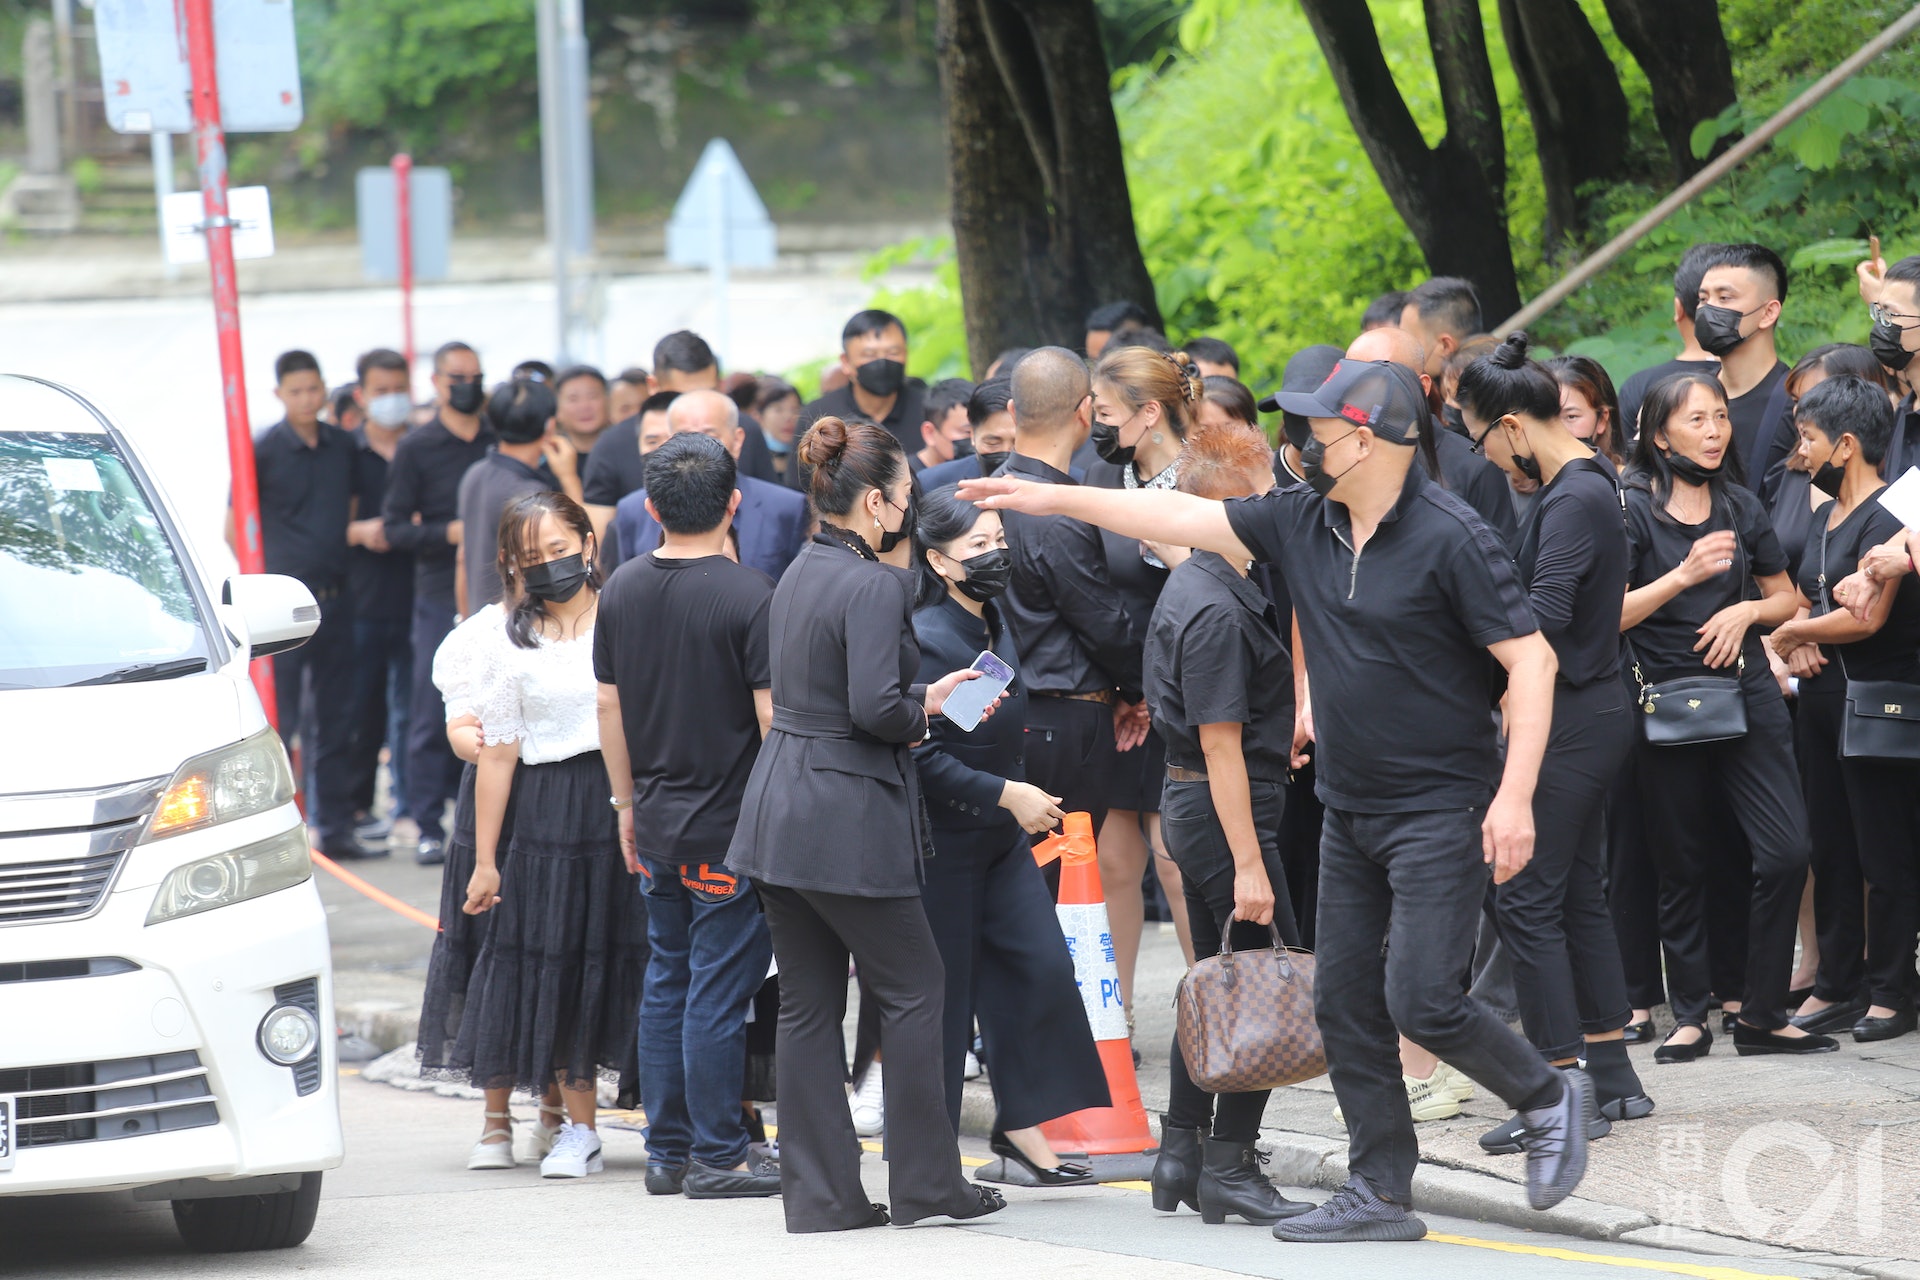 Đám đông xếp hàng dài đến viếng nữ người mẫu Hồng Kông bị giết hại, phân xác - Ảnh 4.